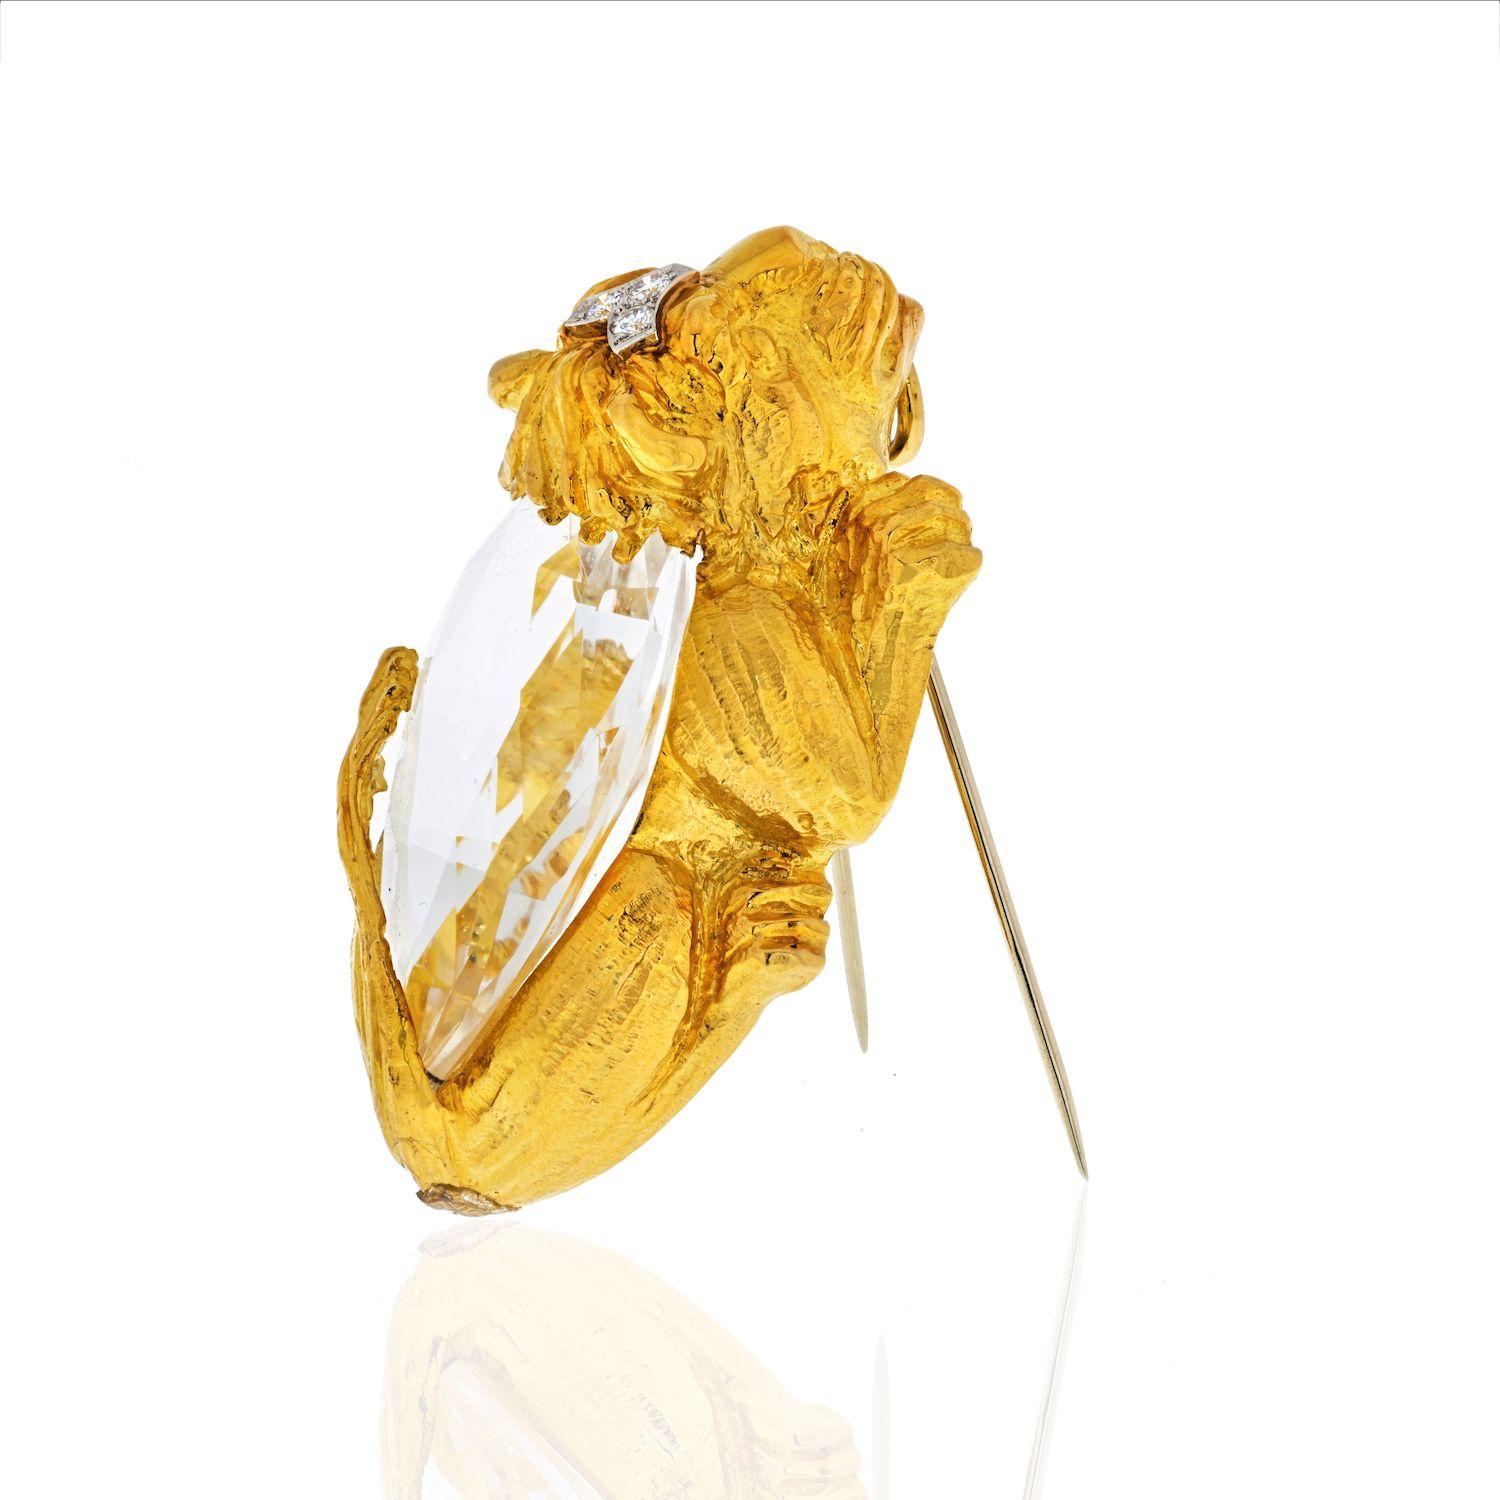 Réalisée en or jaune/platine 18 carats, cette broche/pendentif David Webb a la forme d'un lion accroupi, le corps monté d'un cristal de roche en forme de poire et accentué sur la tête de diamants ronds de taille brillant pesant environ 0,15 carats